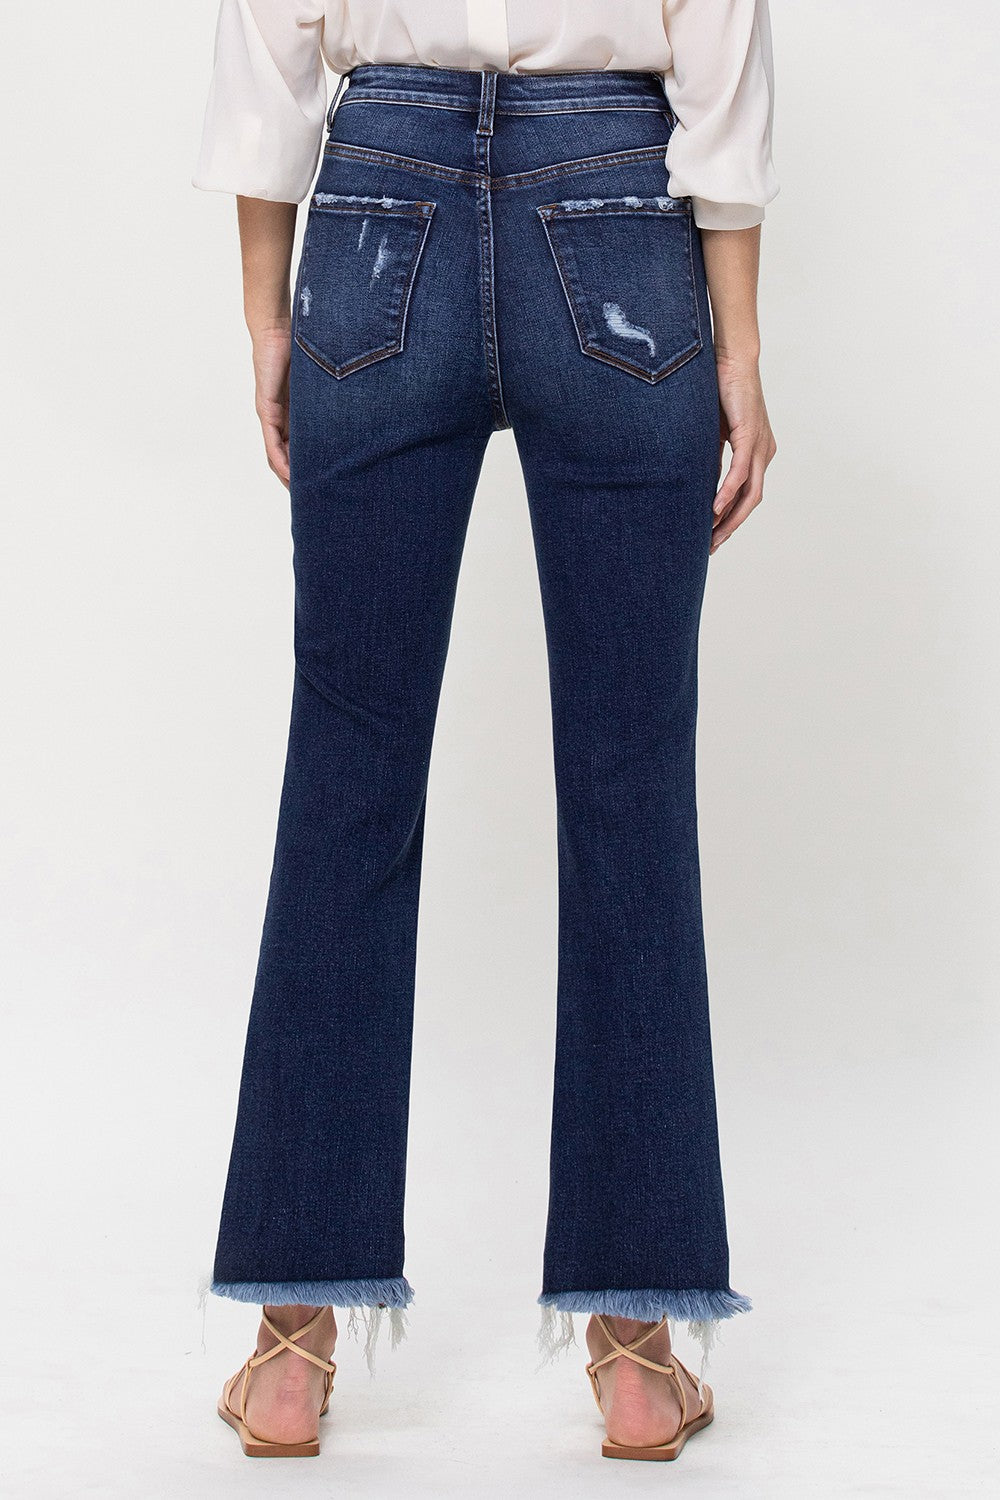 Patsy - Vervet Jeans